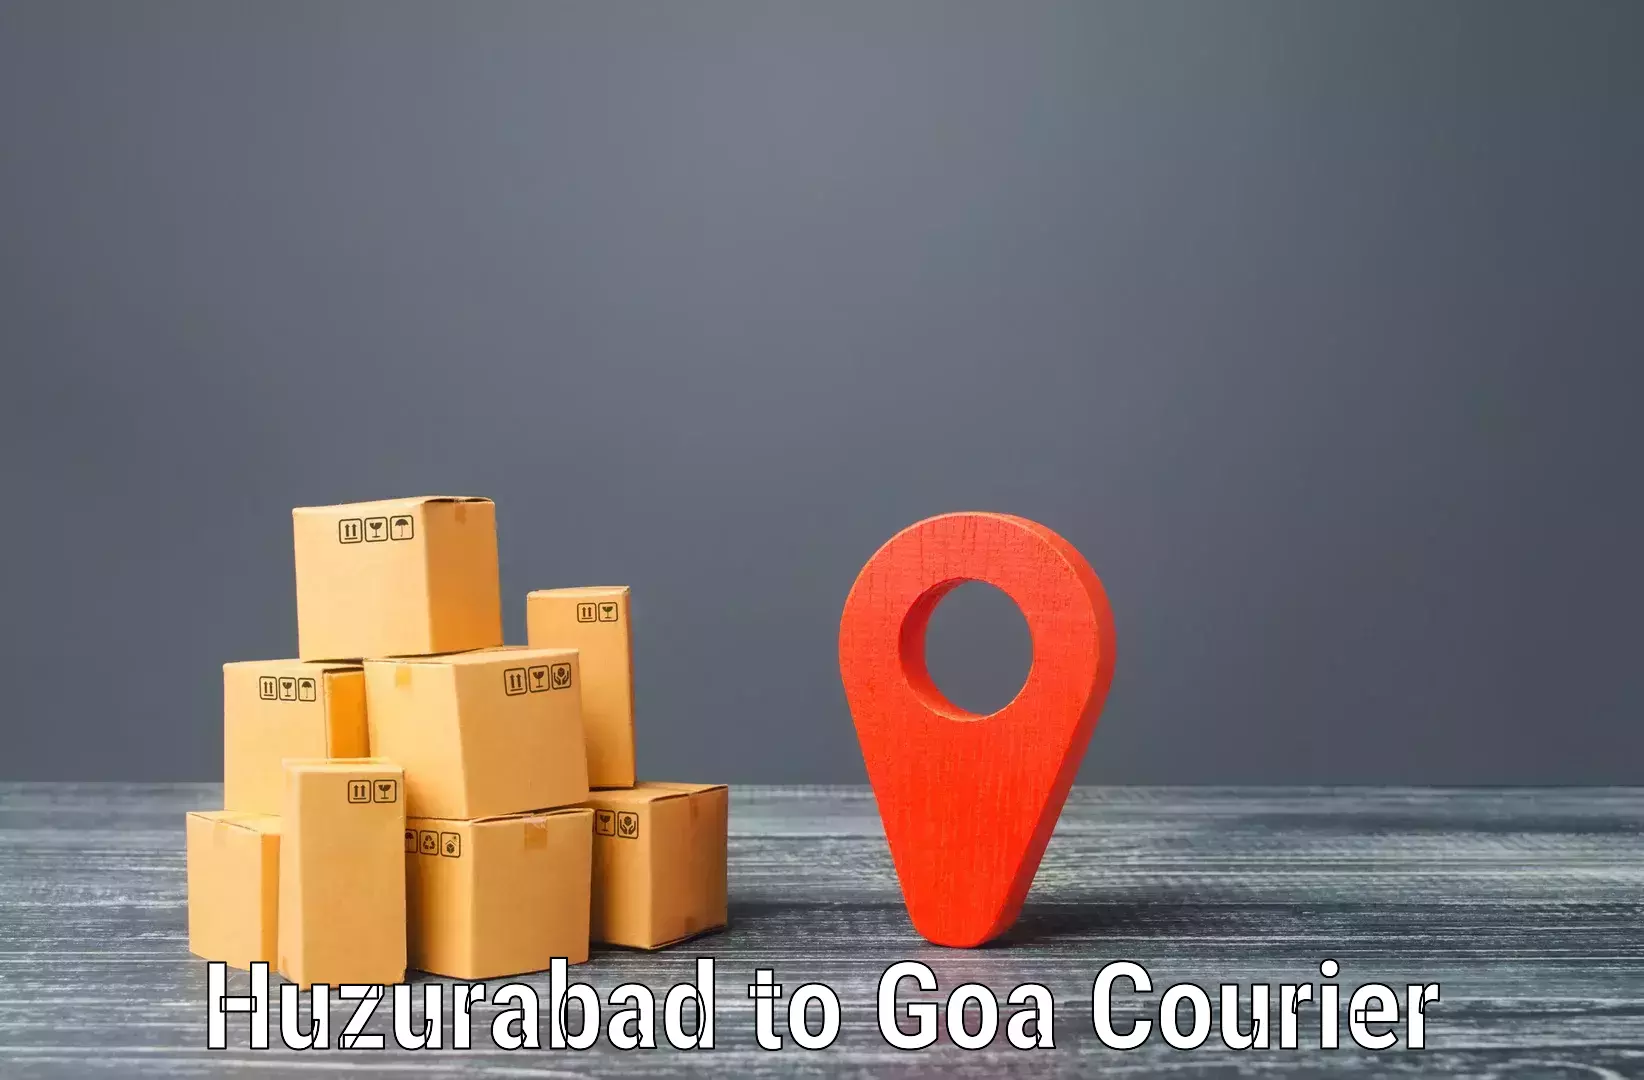 Fast shipping solutions Huzurabad to Panaji